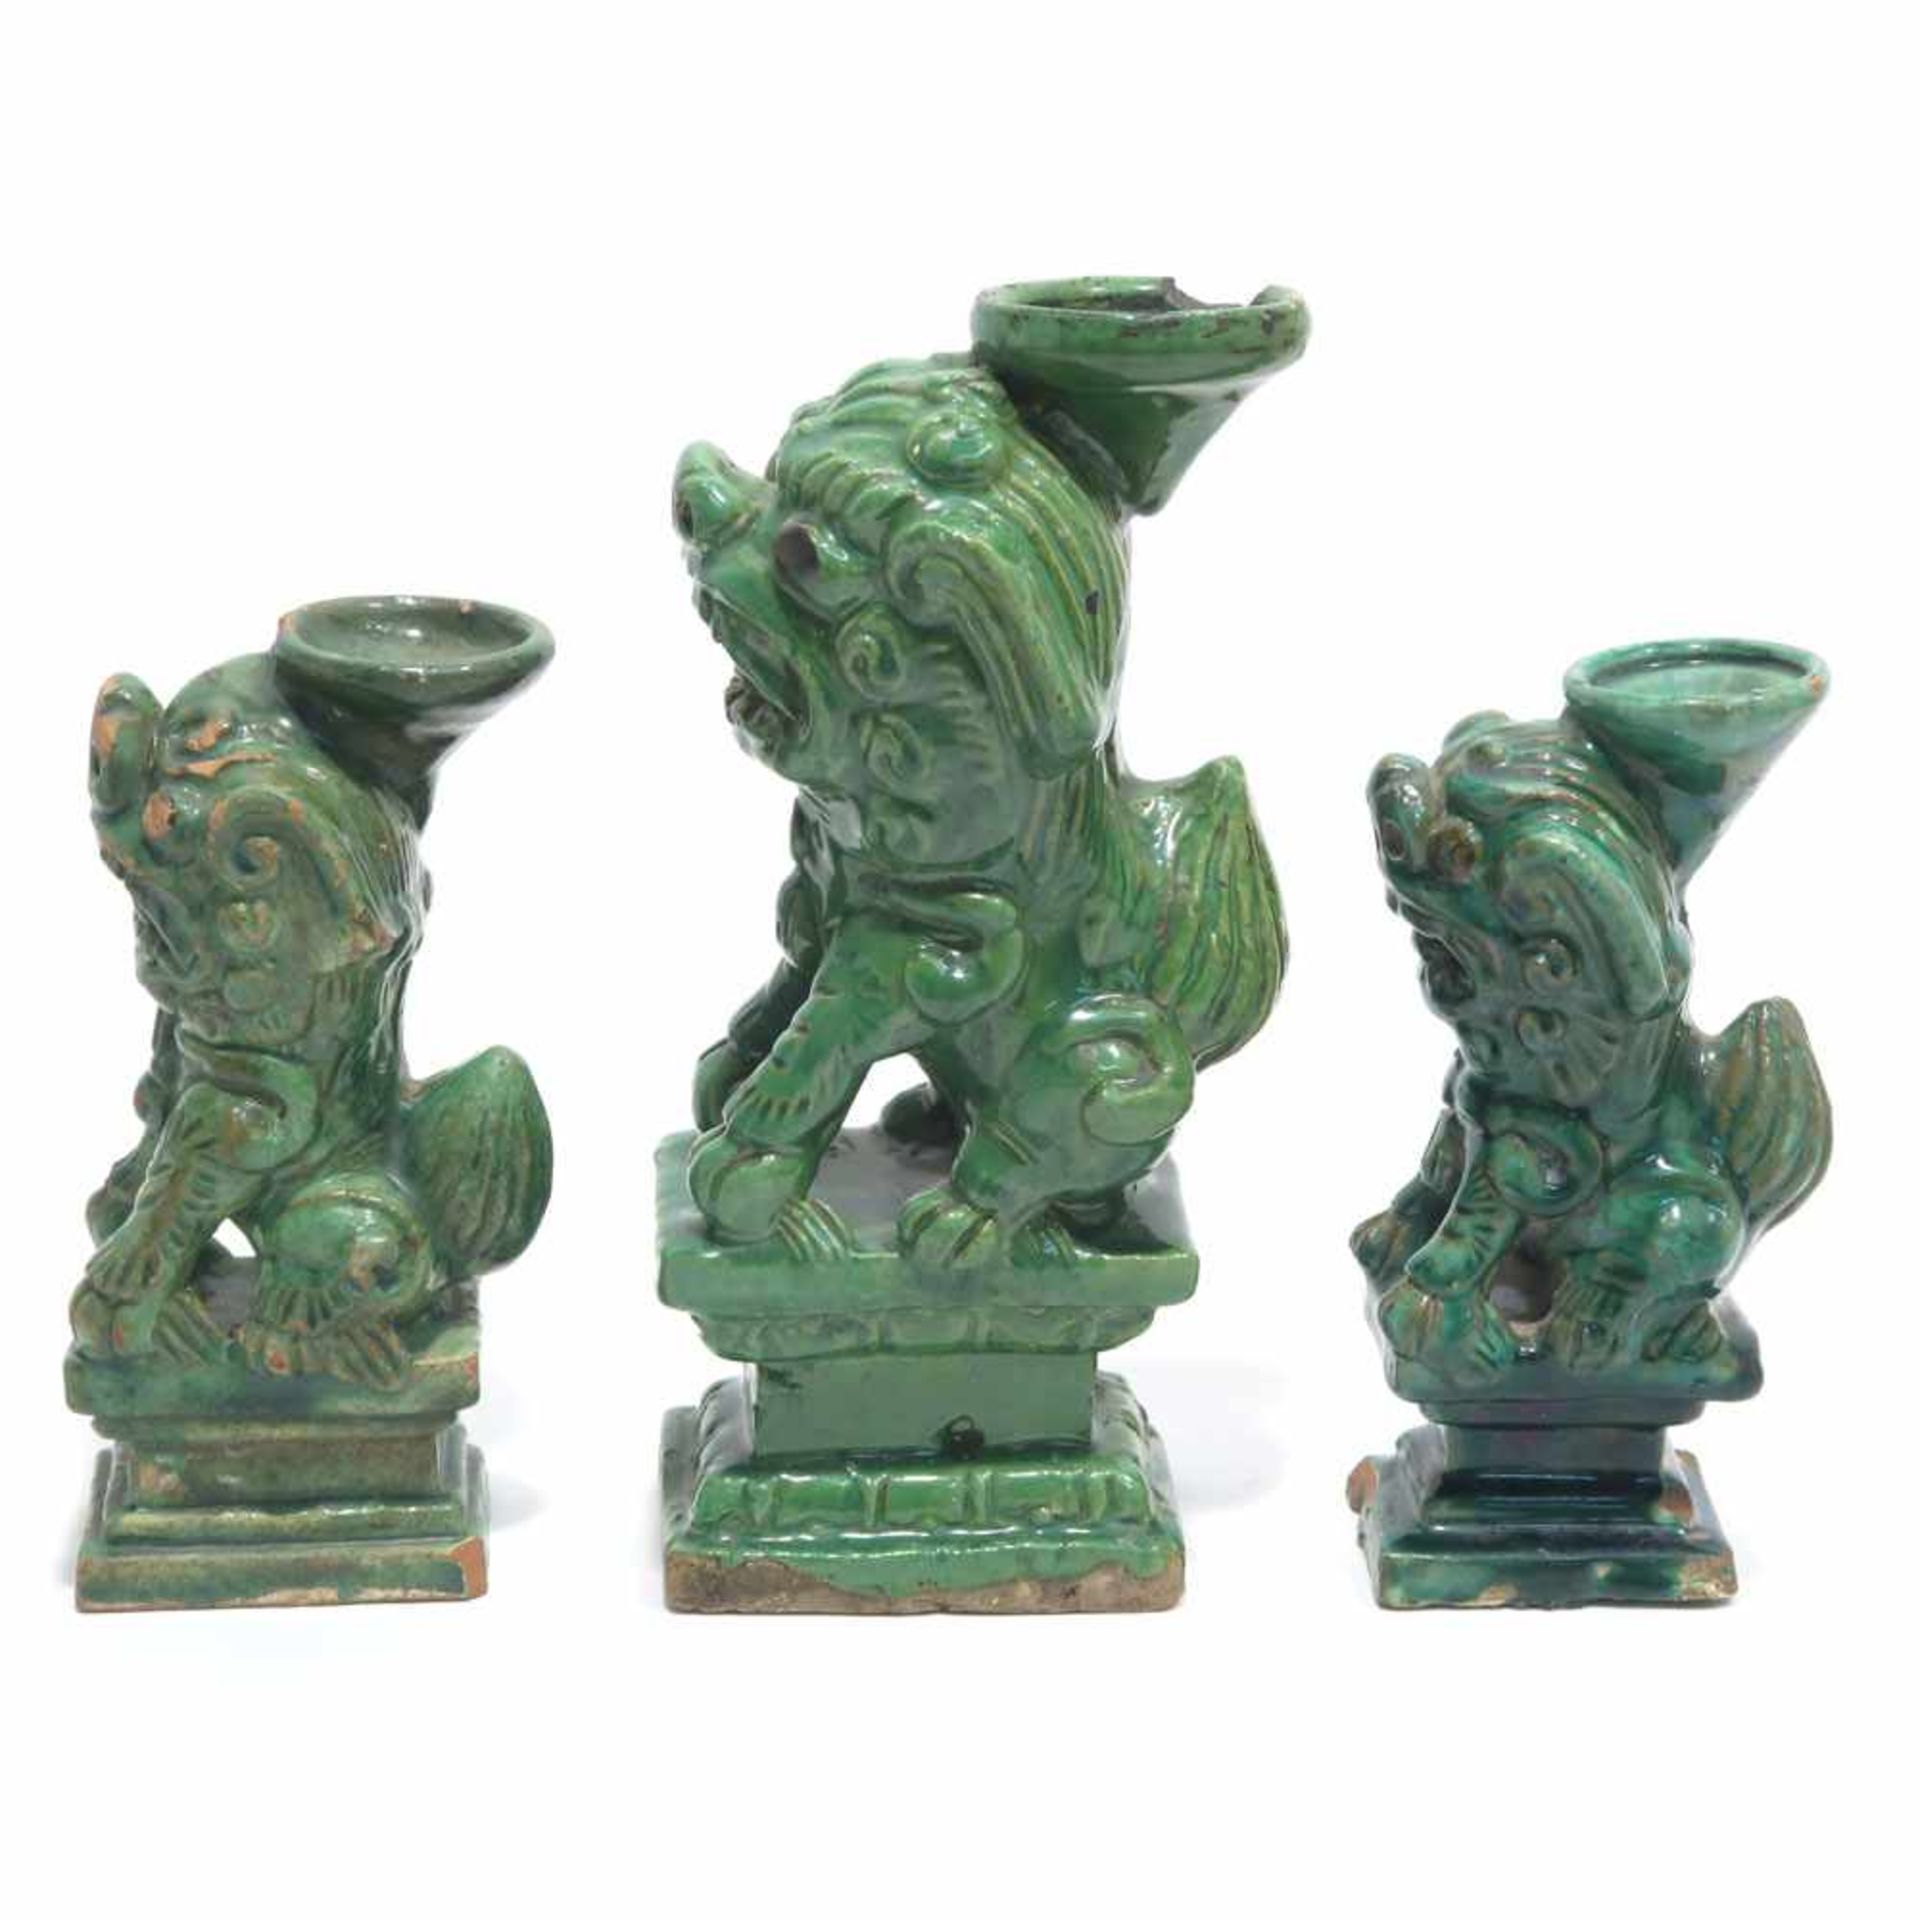 Drei Fo-HundeChina. Keramik, roter Scherben, grün glasiert. Best. H. 15,5 cm bis 21 cm.- - -26. - Bild 3 aus 4